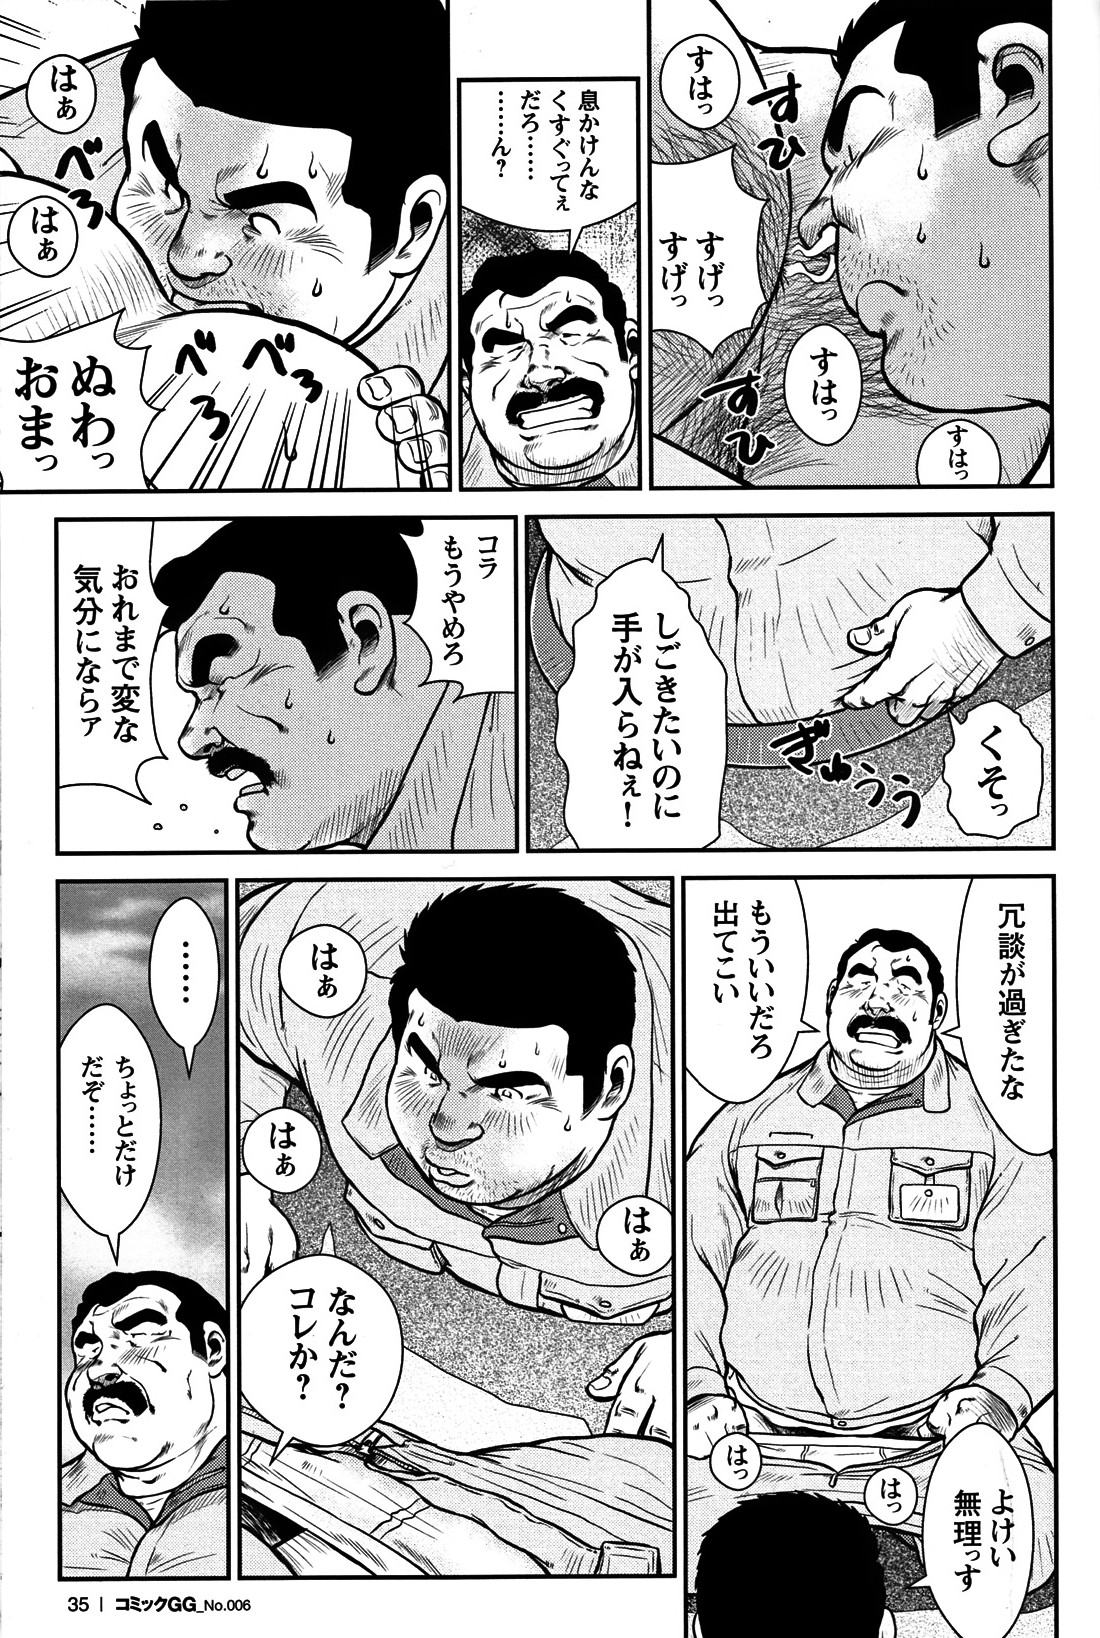 Comic G-men Gaho No. 06 Nikutai Roudousha page 32 full